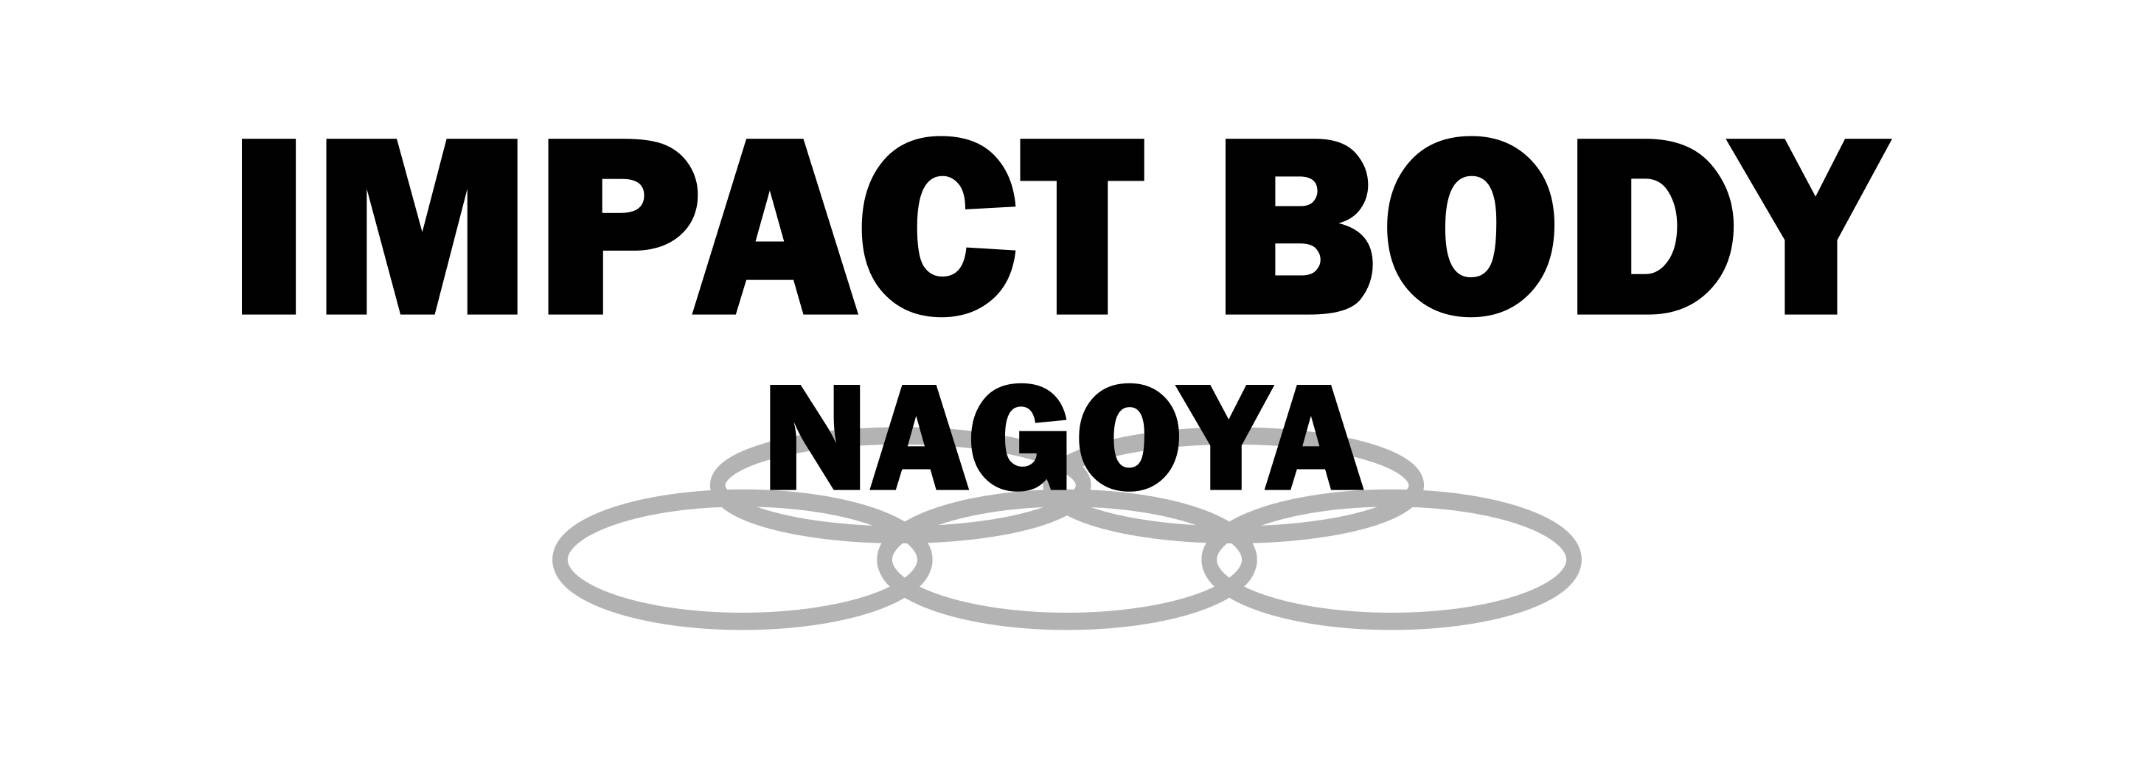 Impact Body Nagoya インパクトボディ名古屋 店舗案内